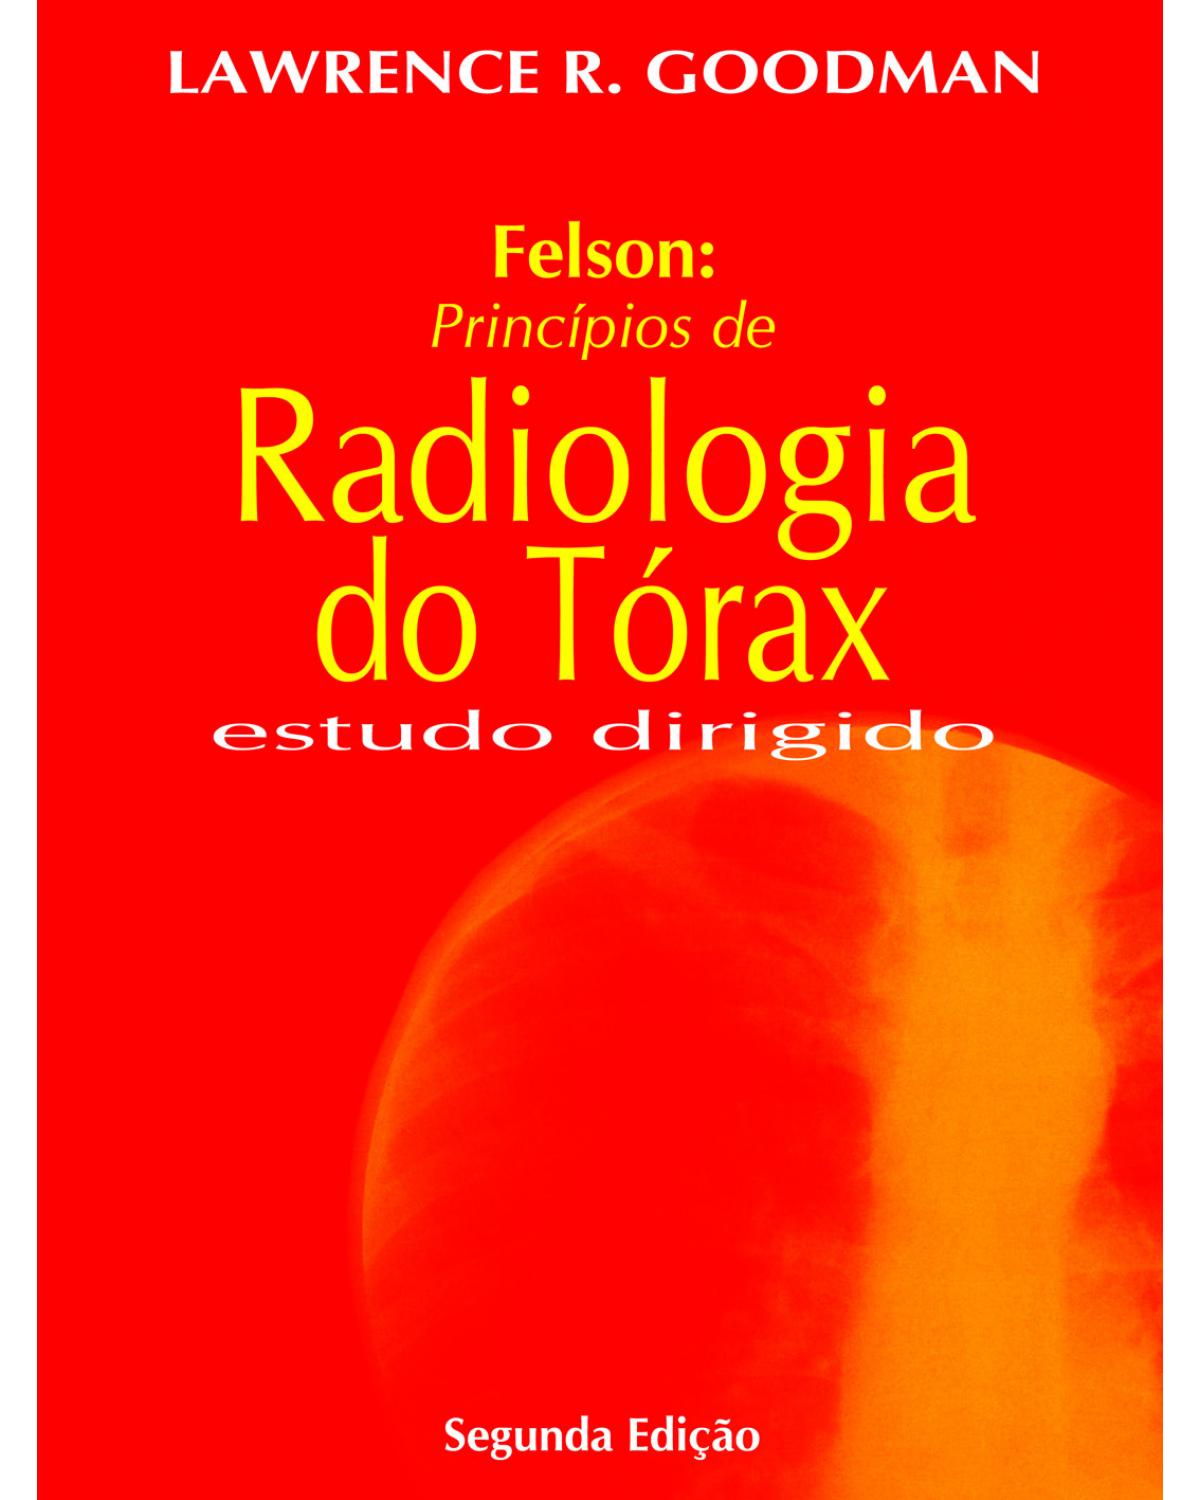 Felson - Princípios de radiologia do tórax - estudo dirigido - 2ª Edição | 2013